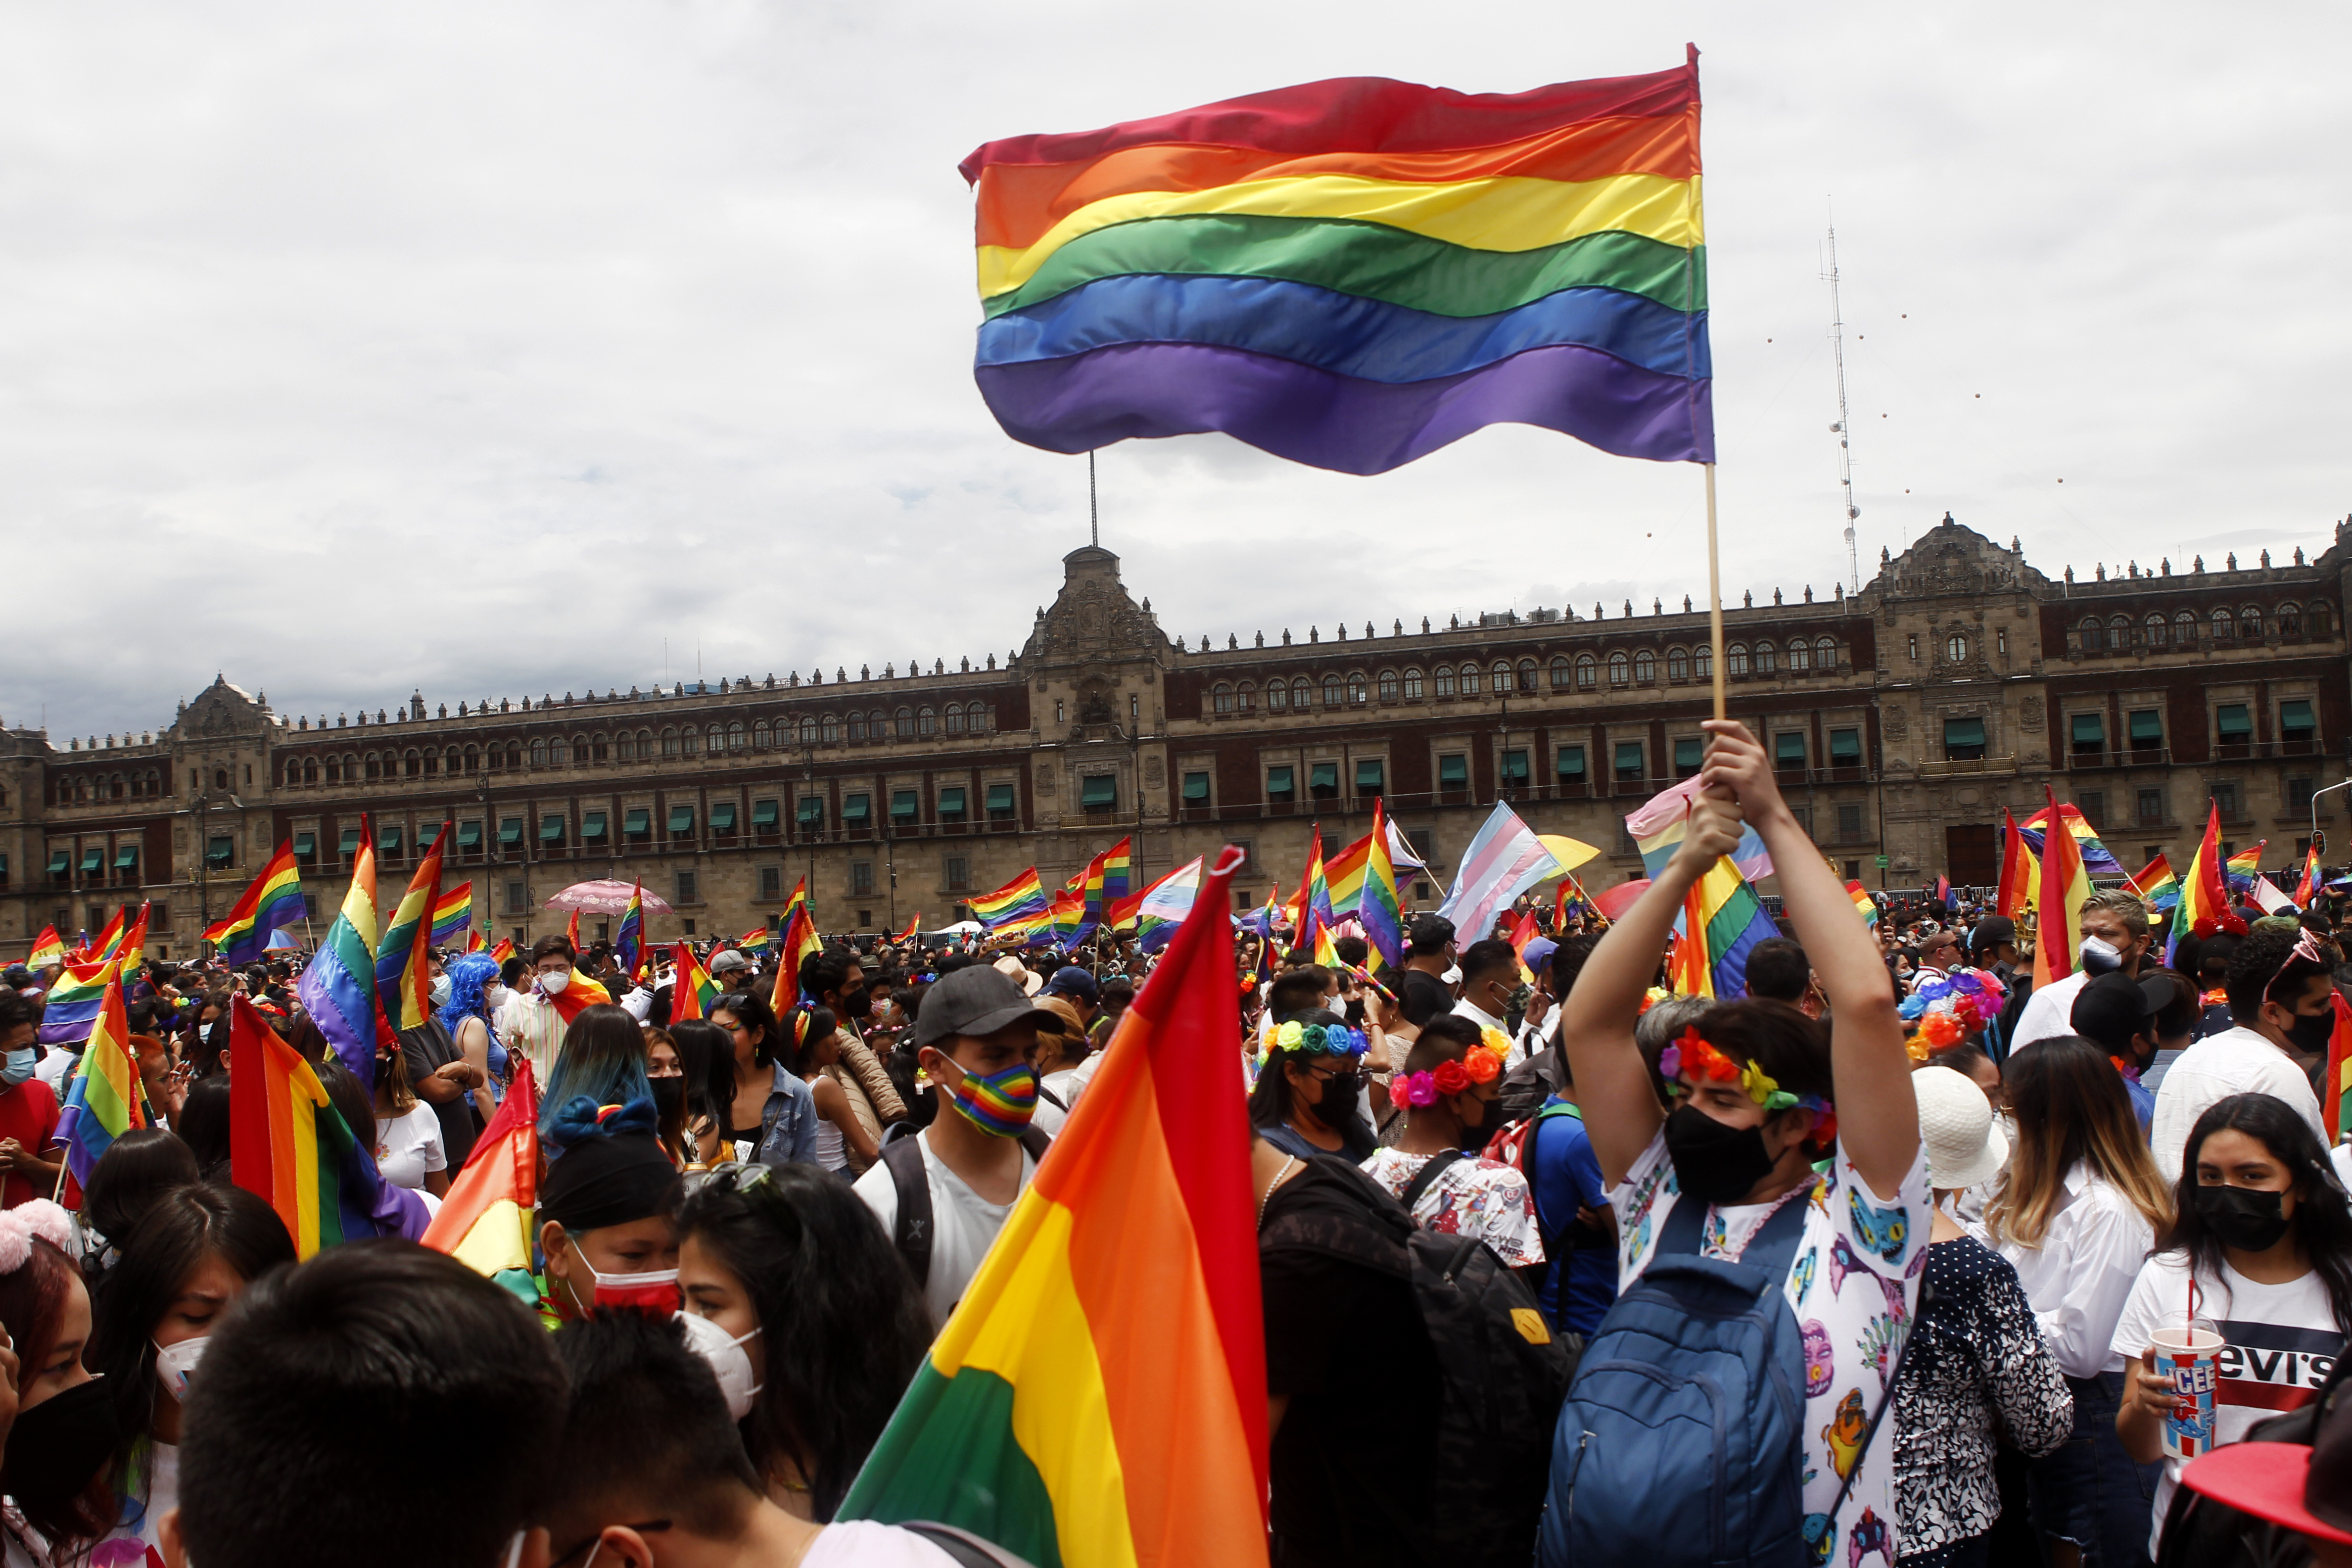 Marcha del Orgullo LGBTTTIQ en la Ciudad de México, realizada como recorrido del Ángel de la Independencia al Zócalo capitalino.  26 de junio de 2021. Foto: Karina Herández / Infobae